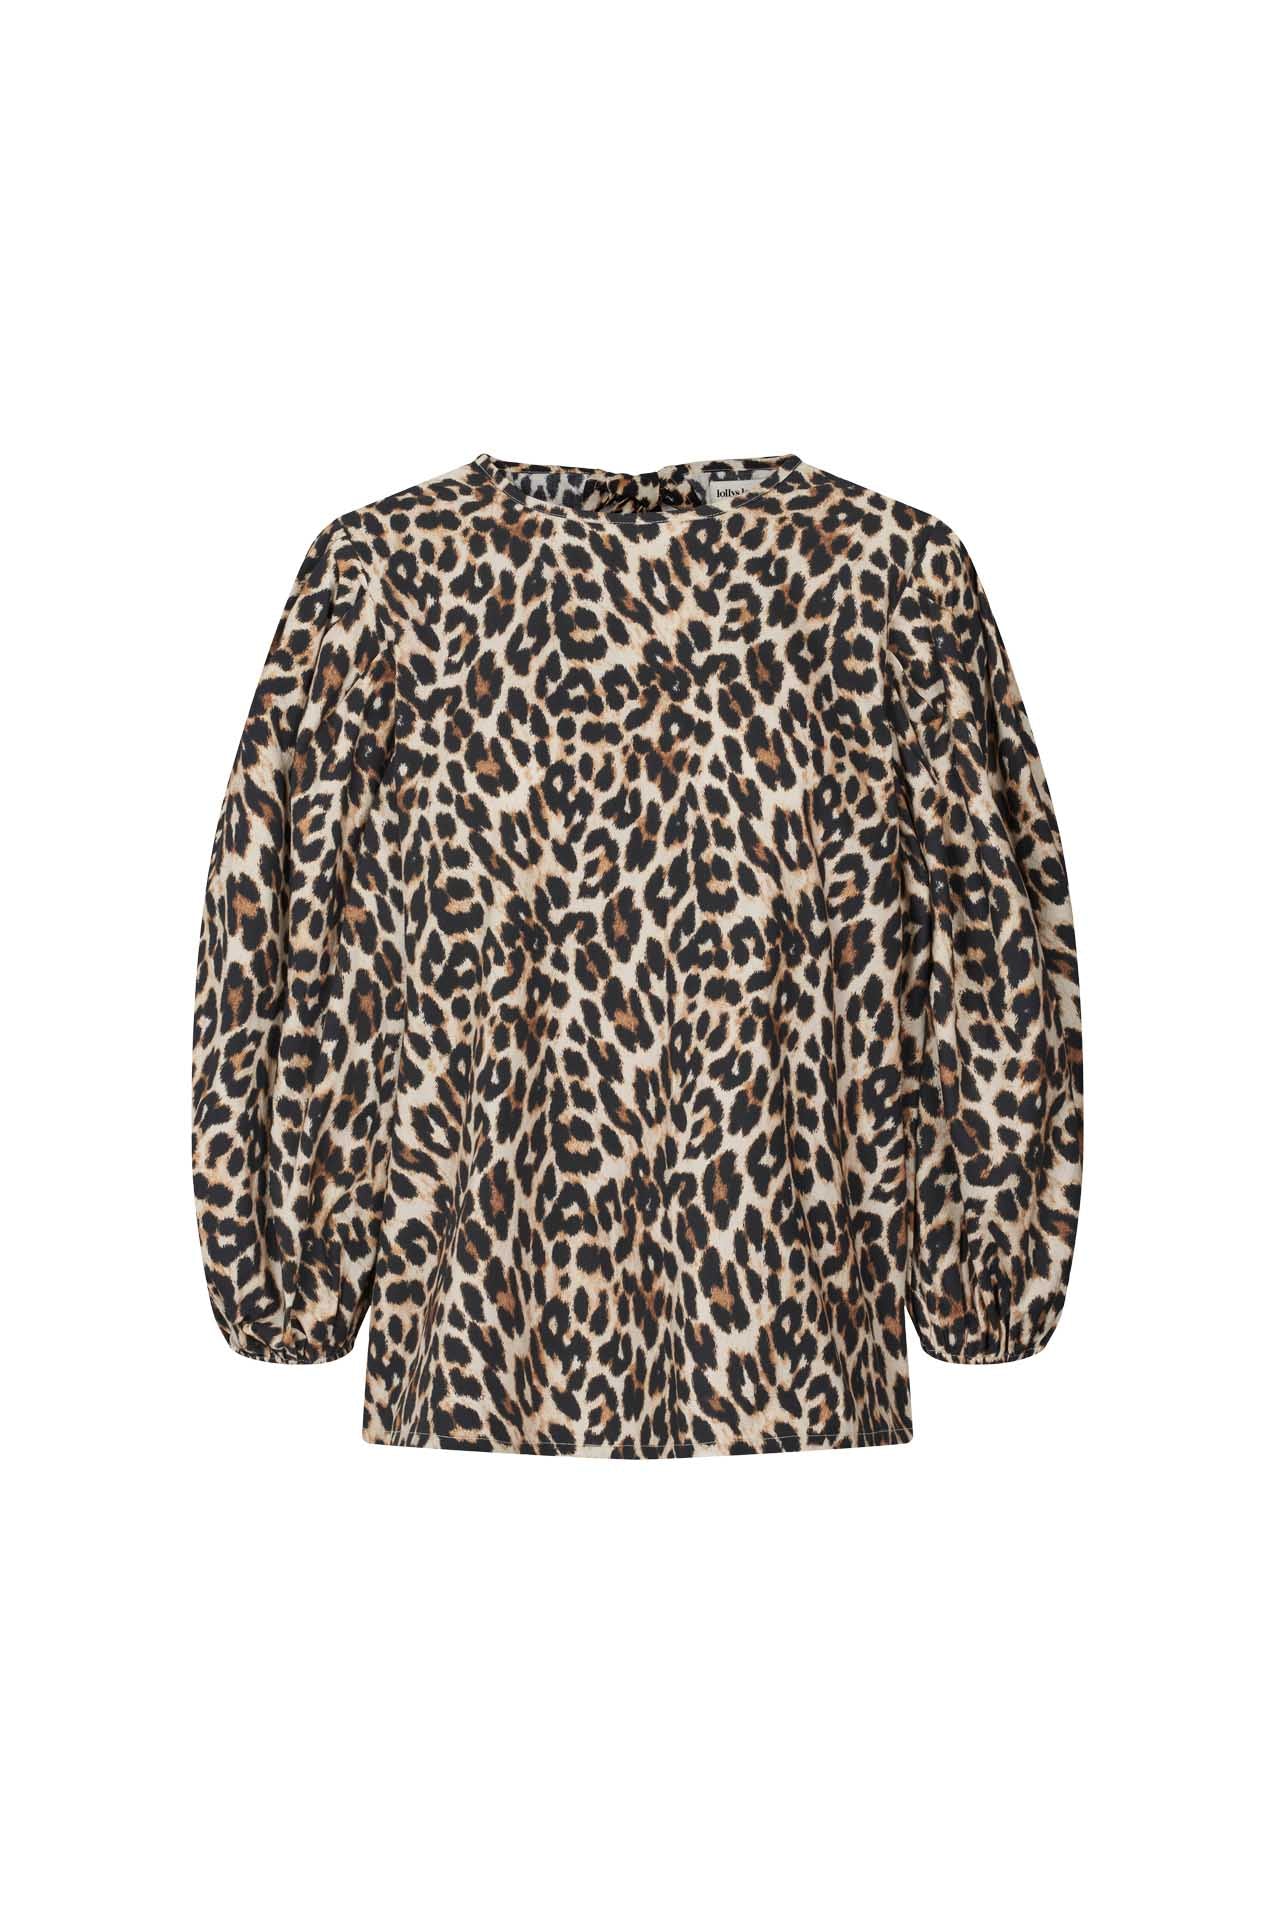 Lollys Laundry Bergen Blouse Shirt 72 Leopard Print